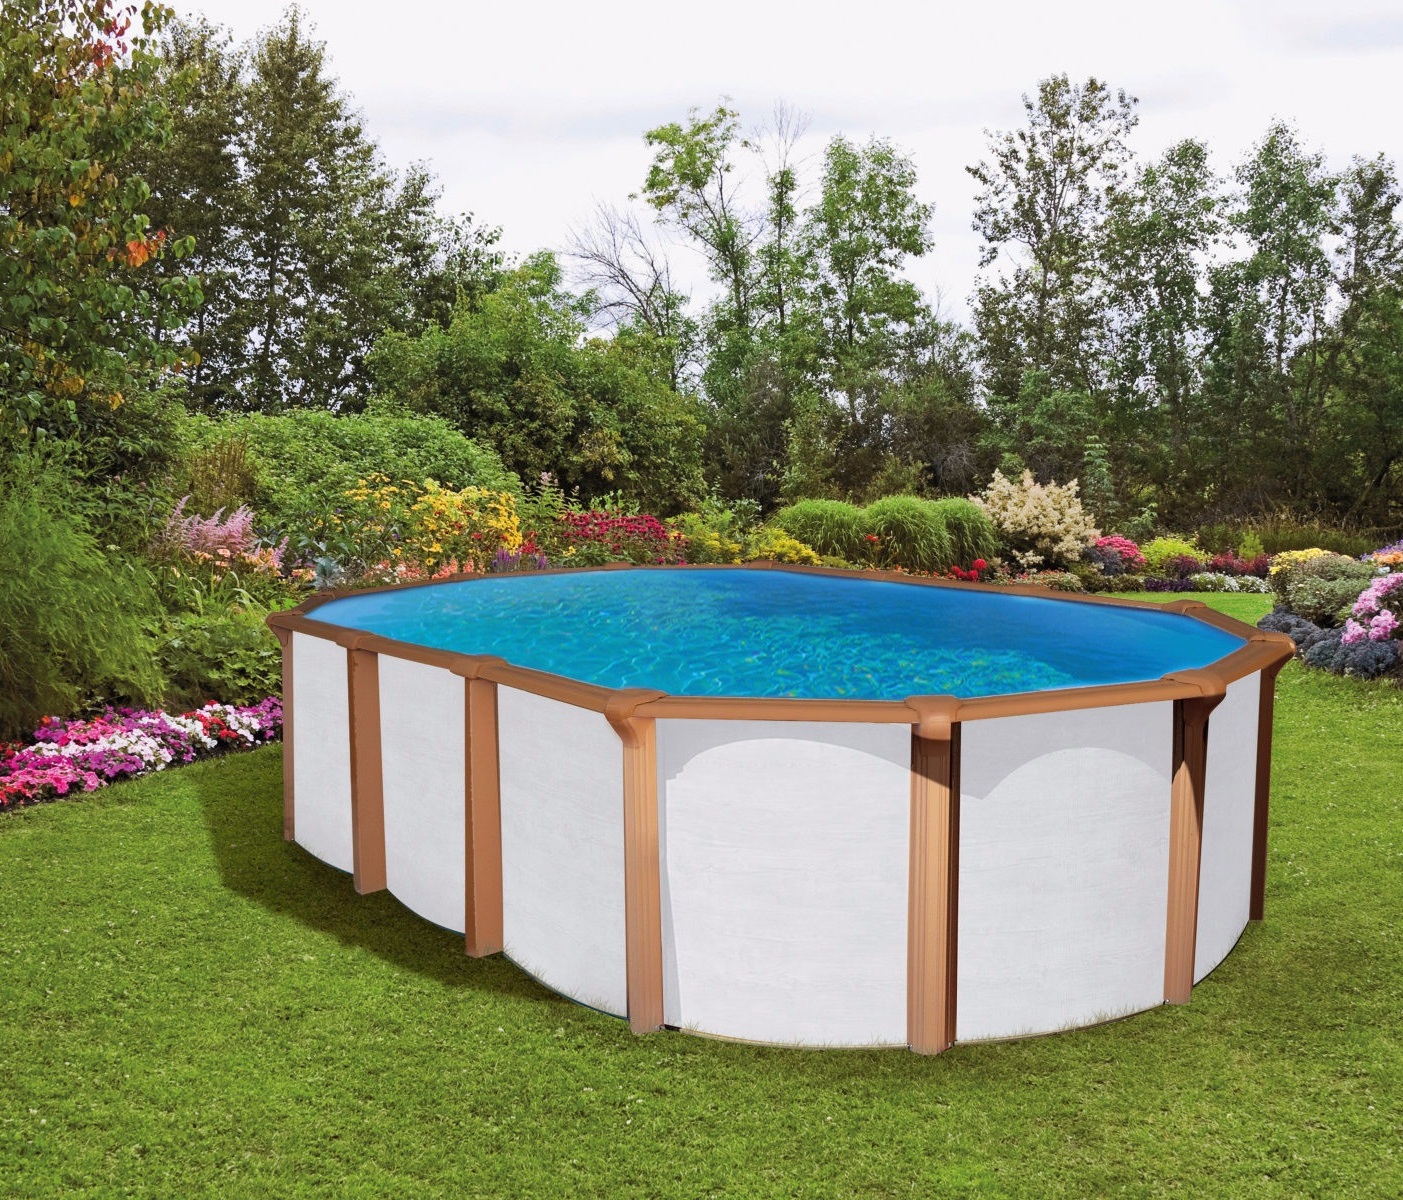 Pool 7,3 x 3,6 x 1,35m white wood Oval Stahlwand Schwimmbecken breiter Handaluf